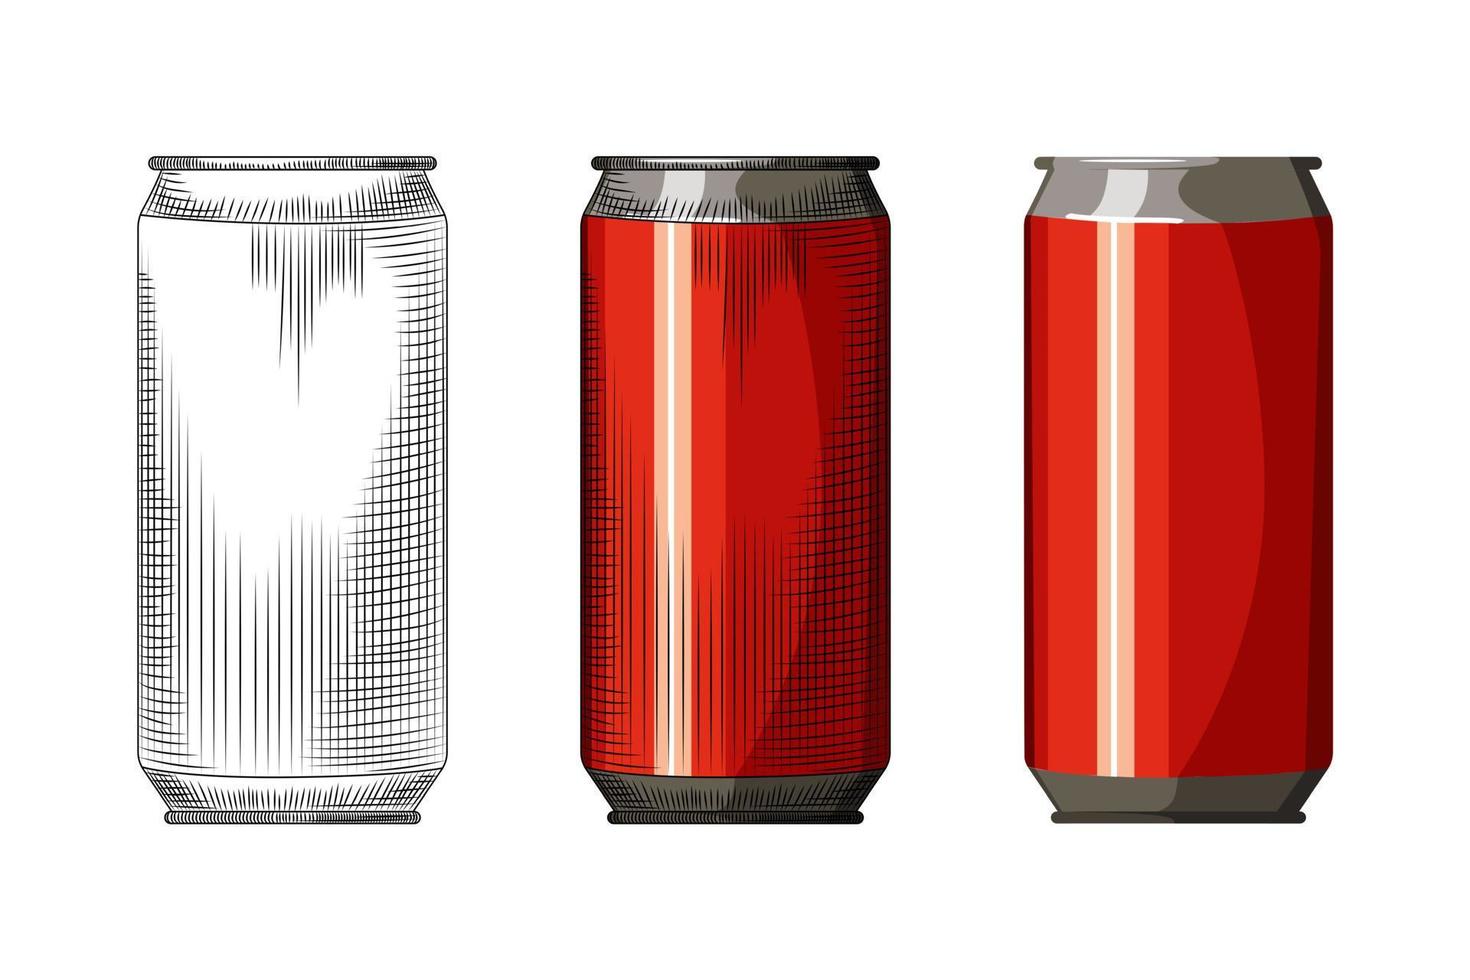 bevanda rossa può isolato su sfondo bianco. modello di lattina di birra disegnata a mano. illustrazione vettoriale in stile vintage inciso.